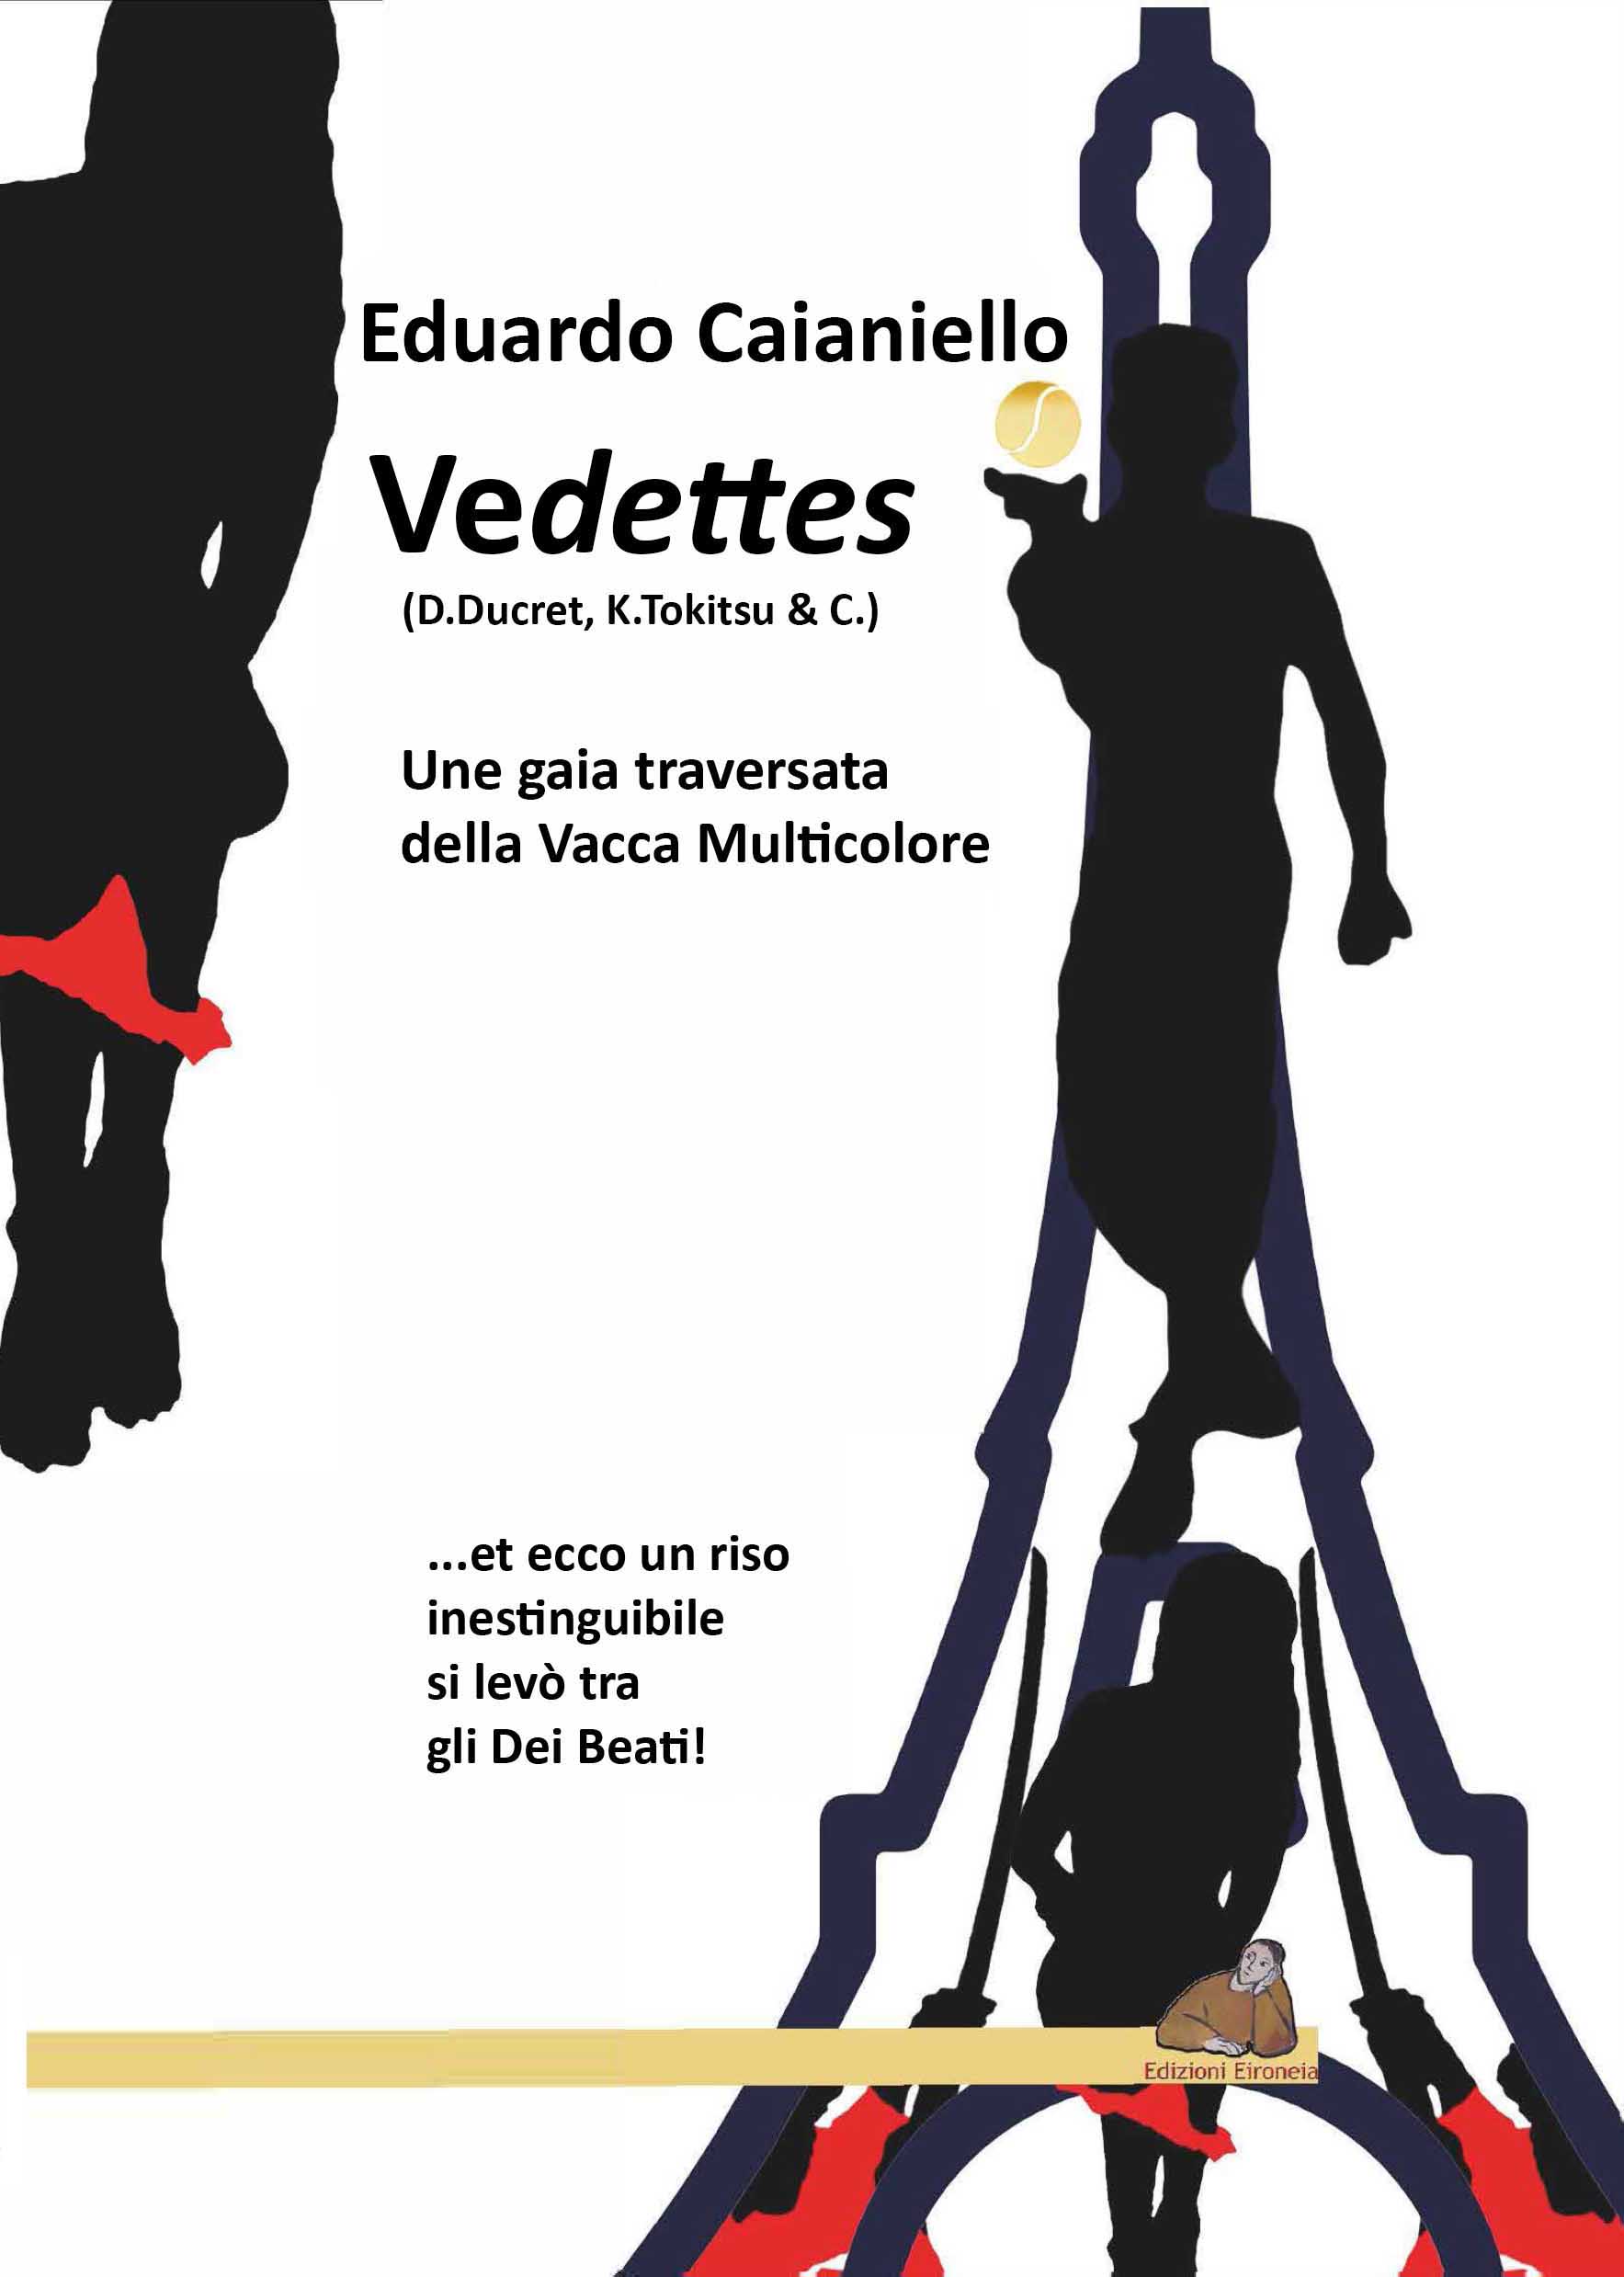 Couverture de 'Vedettes': Hphastos le Boiteux traverse la Vache Multicolore!